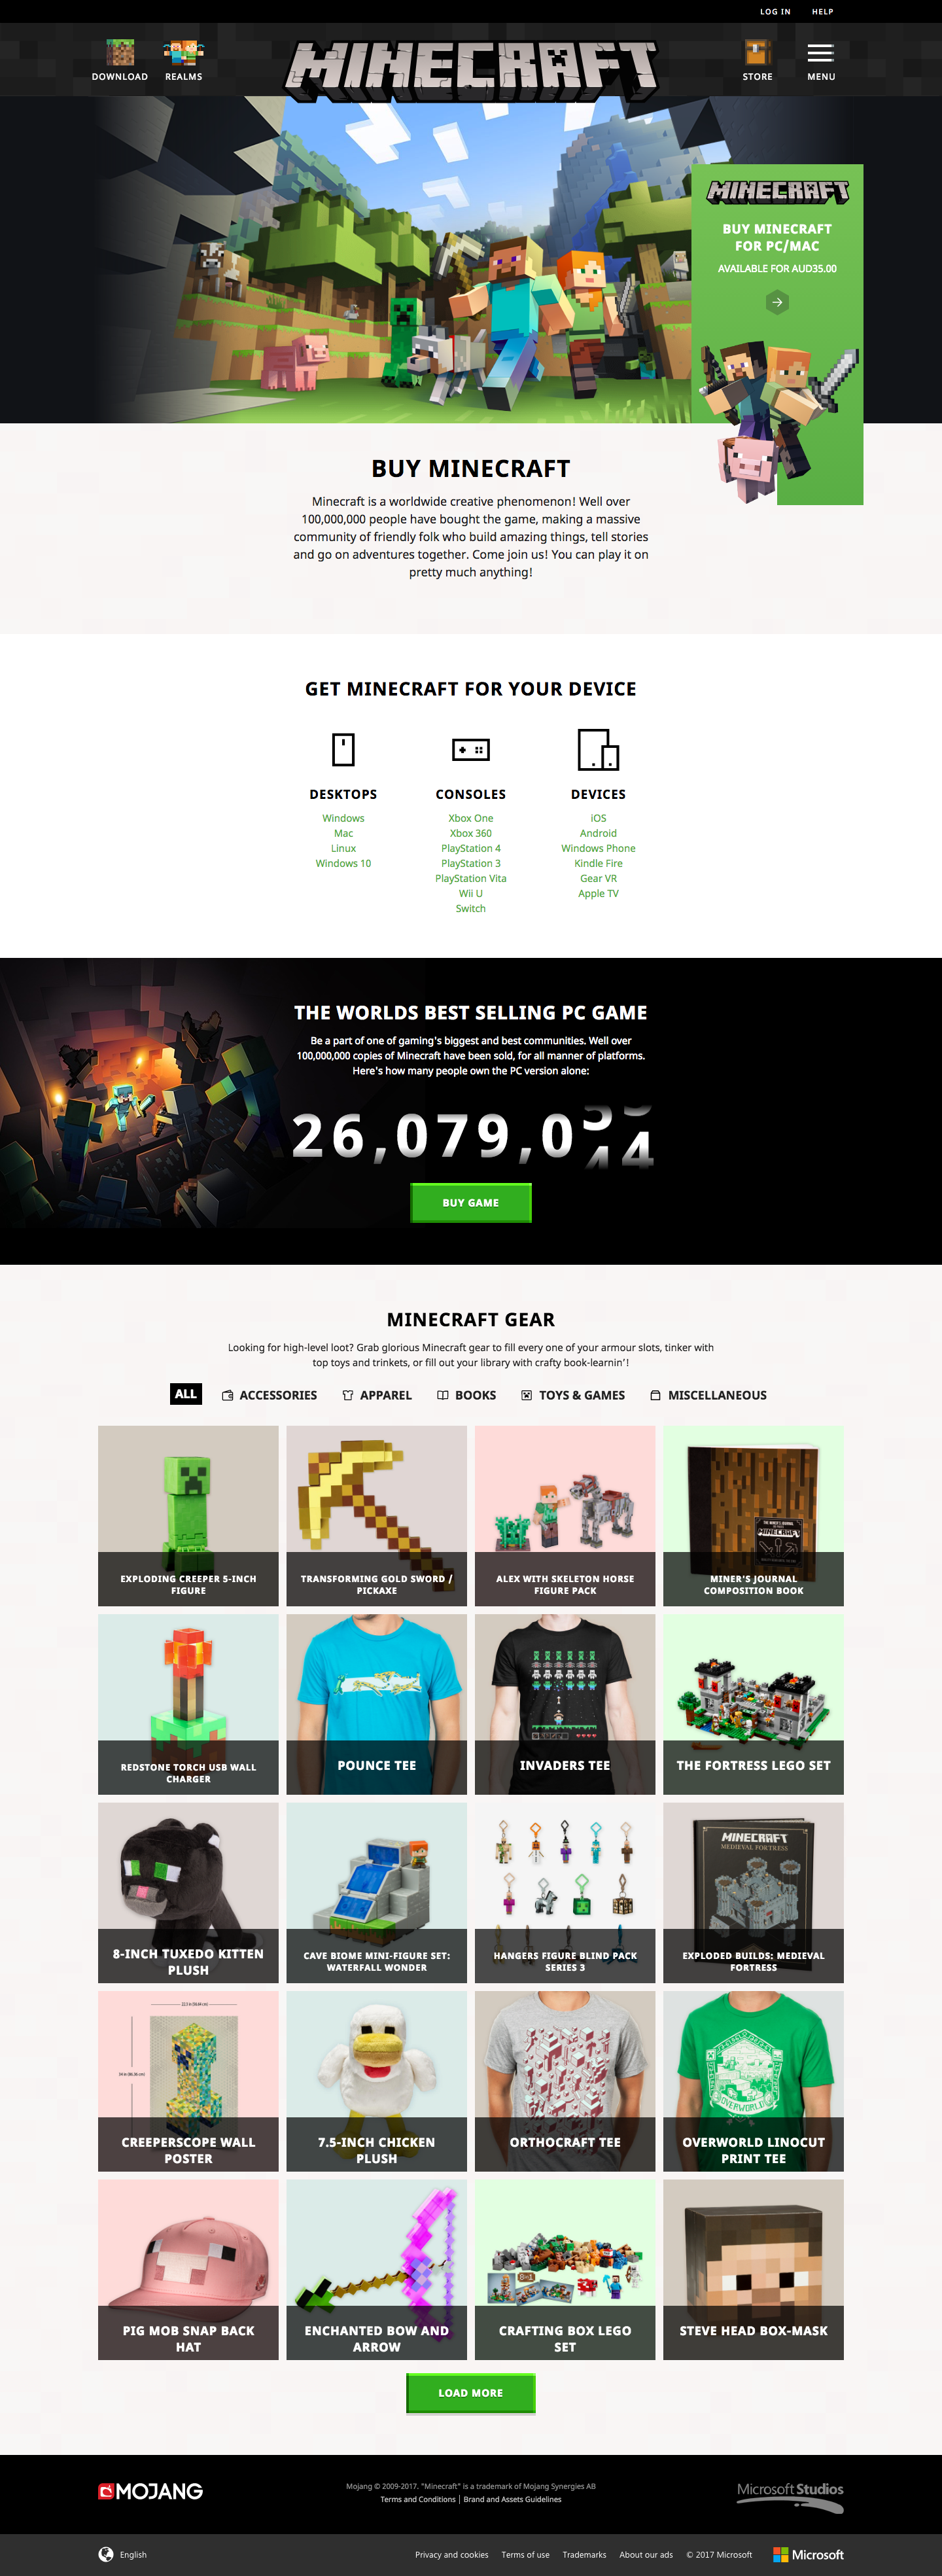 Minecraftウェブサイト - Minecraft Wiki